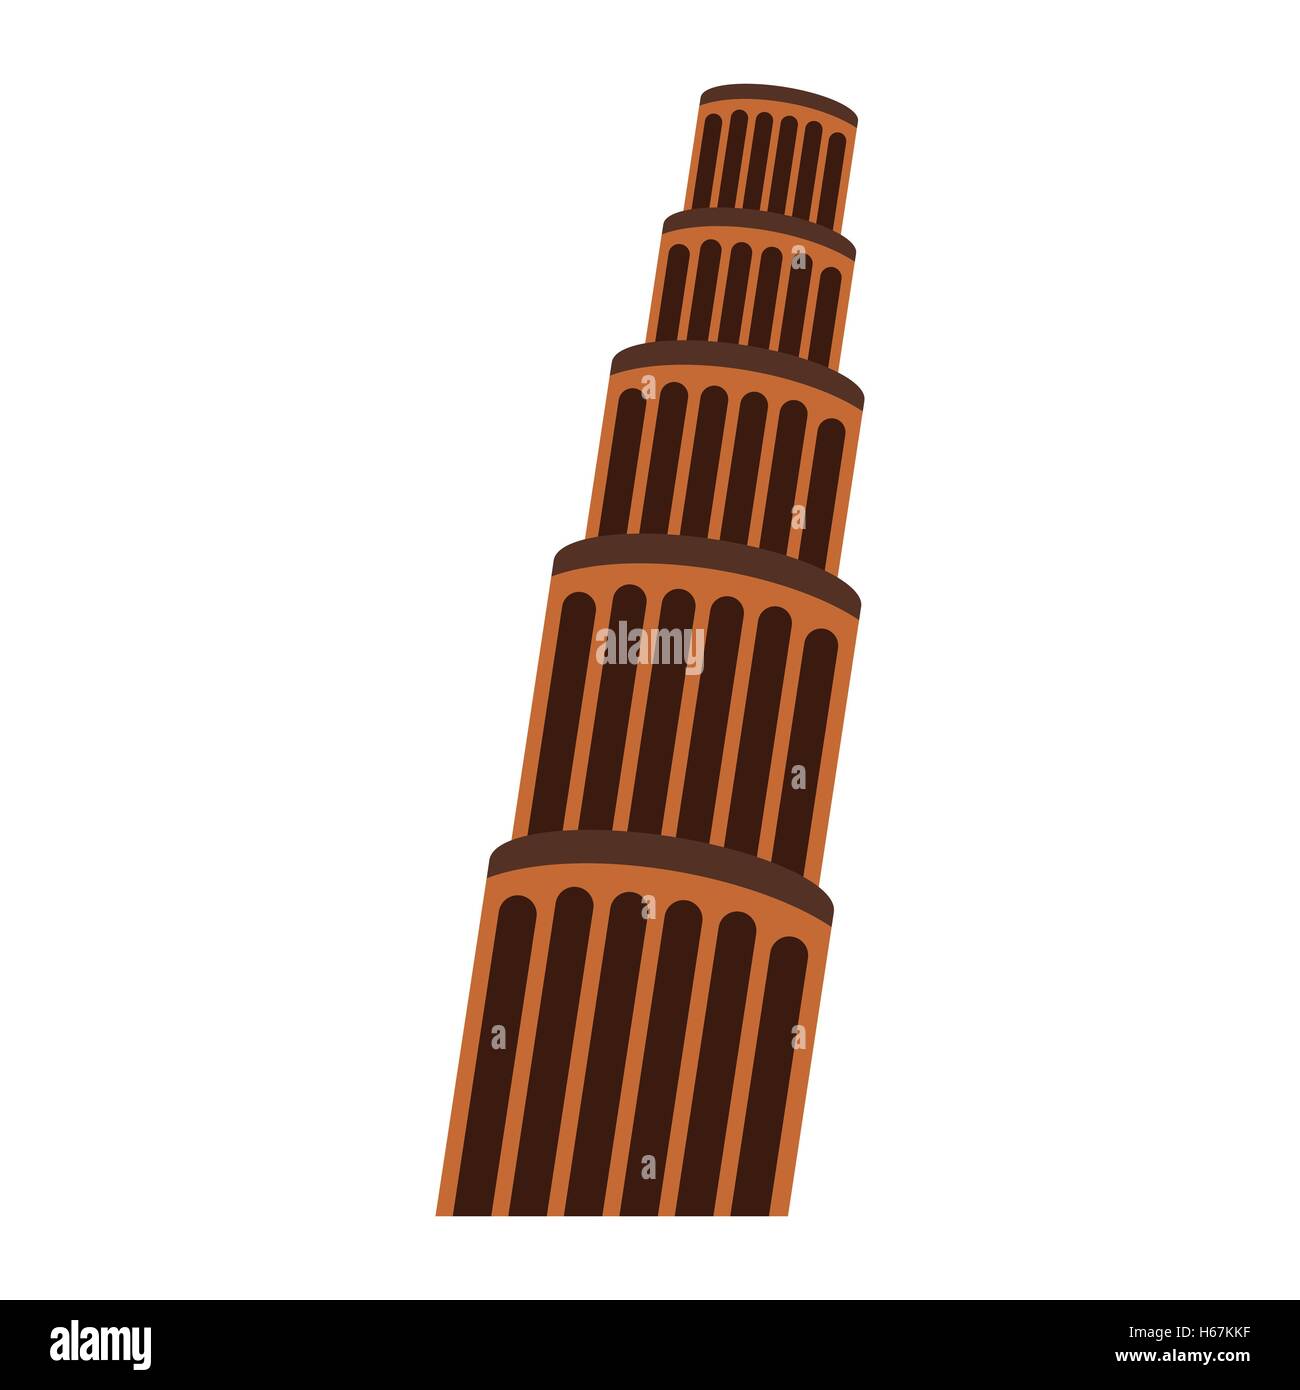 Der schiefe Turm, Pisa Stock Vektor